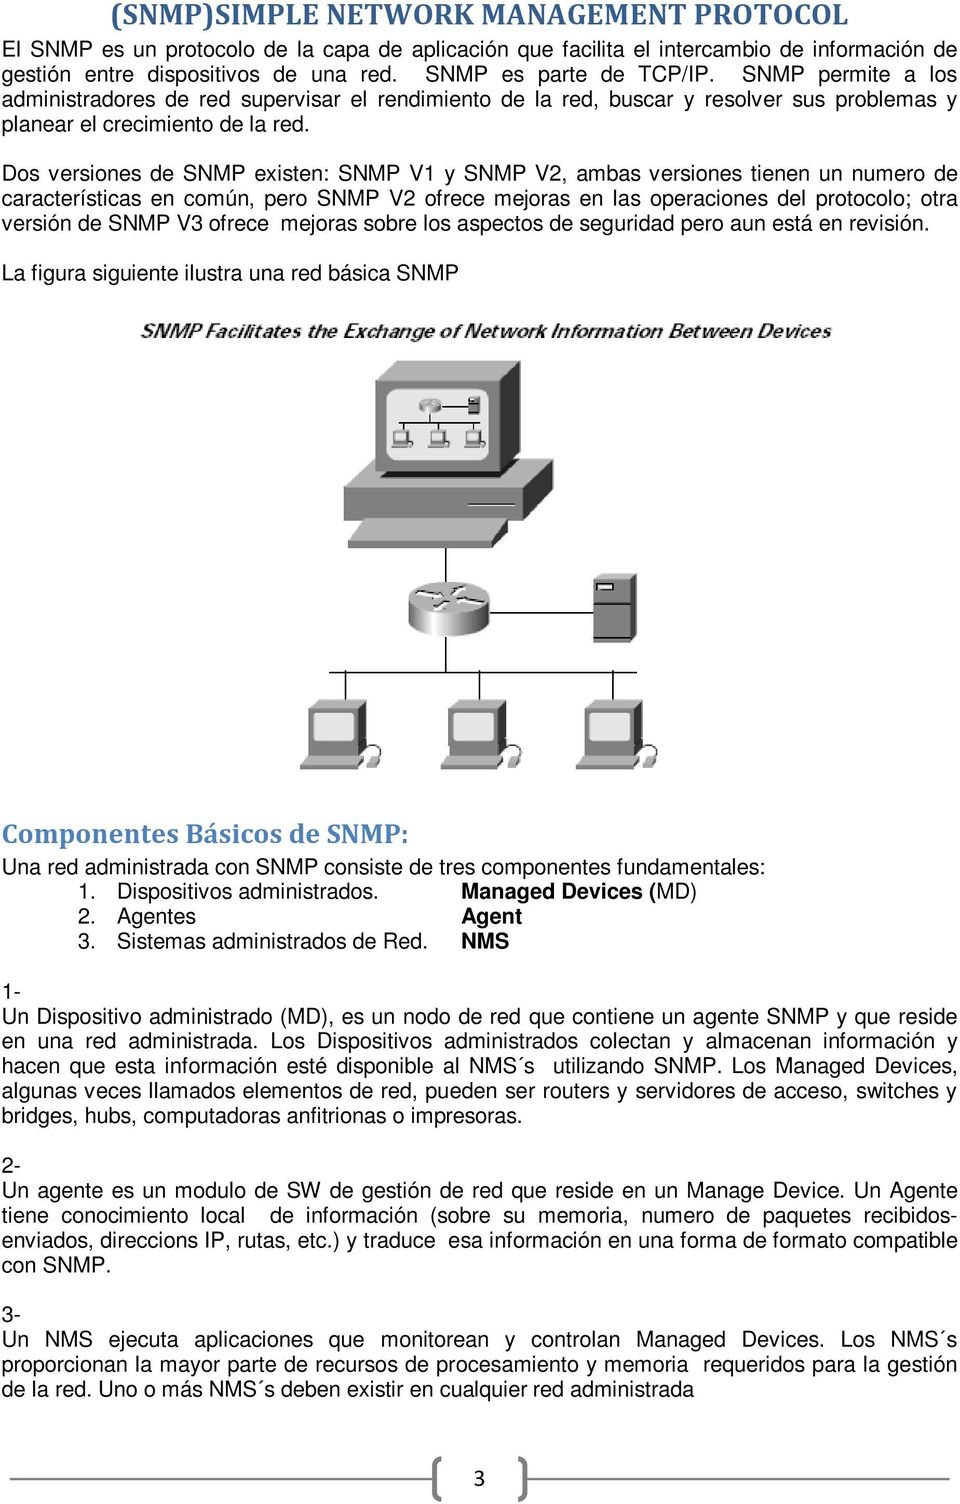 Dos versiones de SNMP existen: SNMP V1 y SNMP V2, ambas versiones tienen un numero de características en común, pero SNMP V2 ofrece mejoras en las operaciones del protocolo; otra versión de SNMP V3